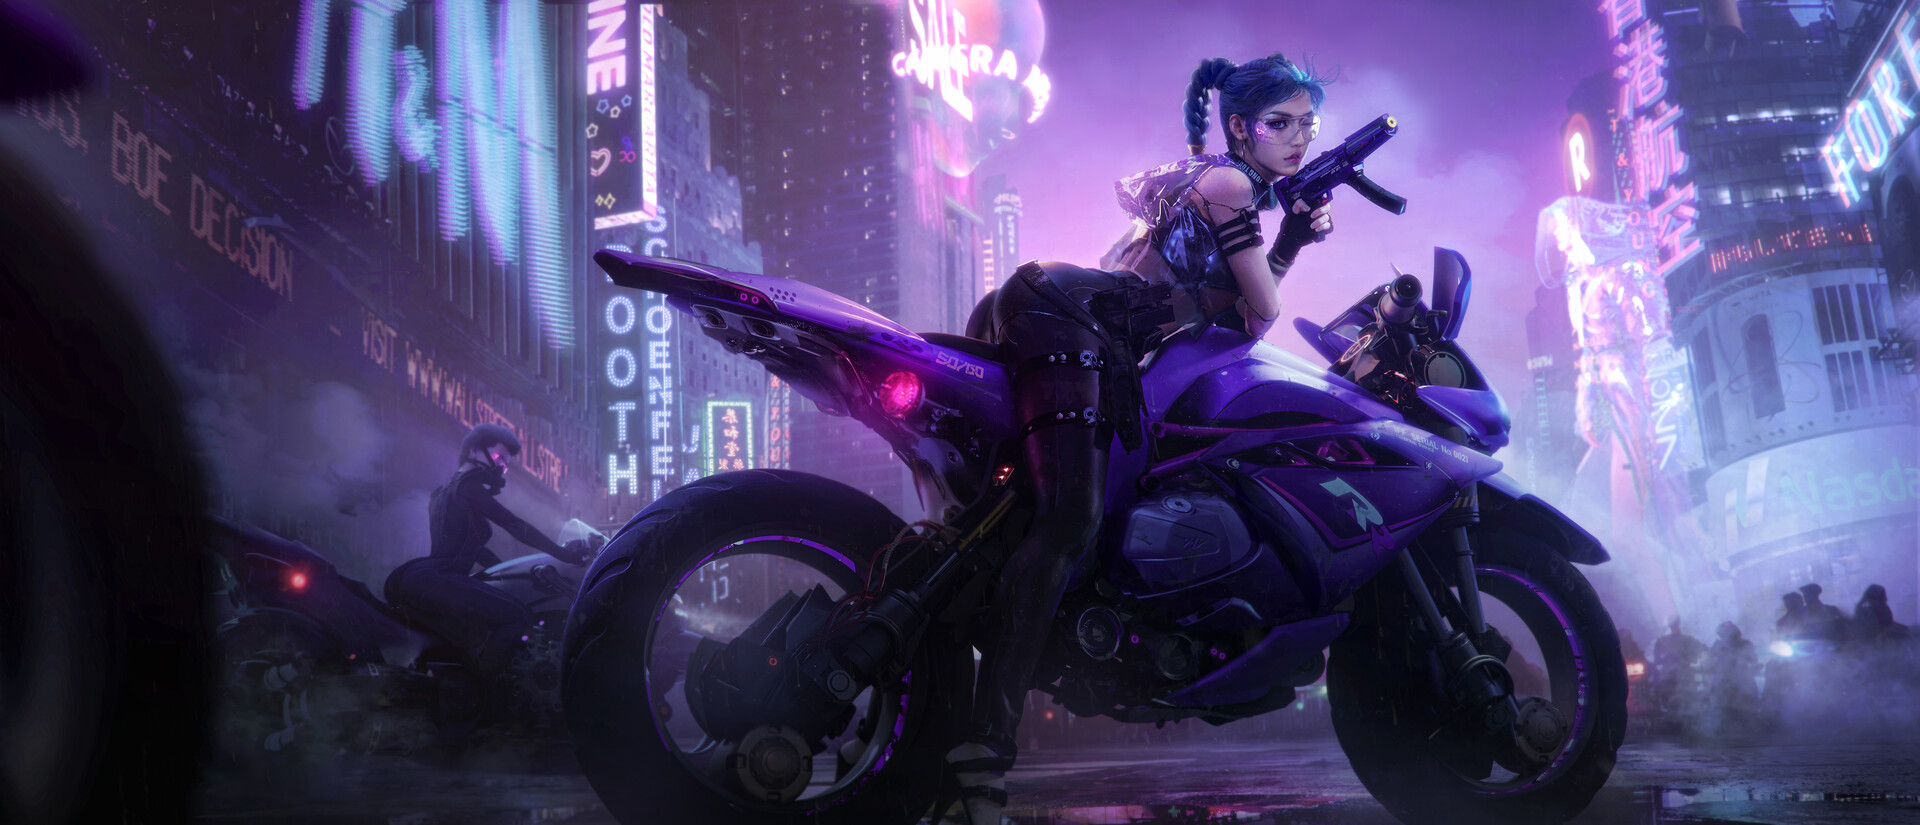 Tian Zi Cyberpunk Futuristic Cyber City ArtStation Cyber Woman Women Motorcycle 1920x825